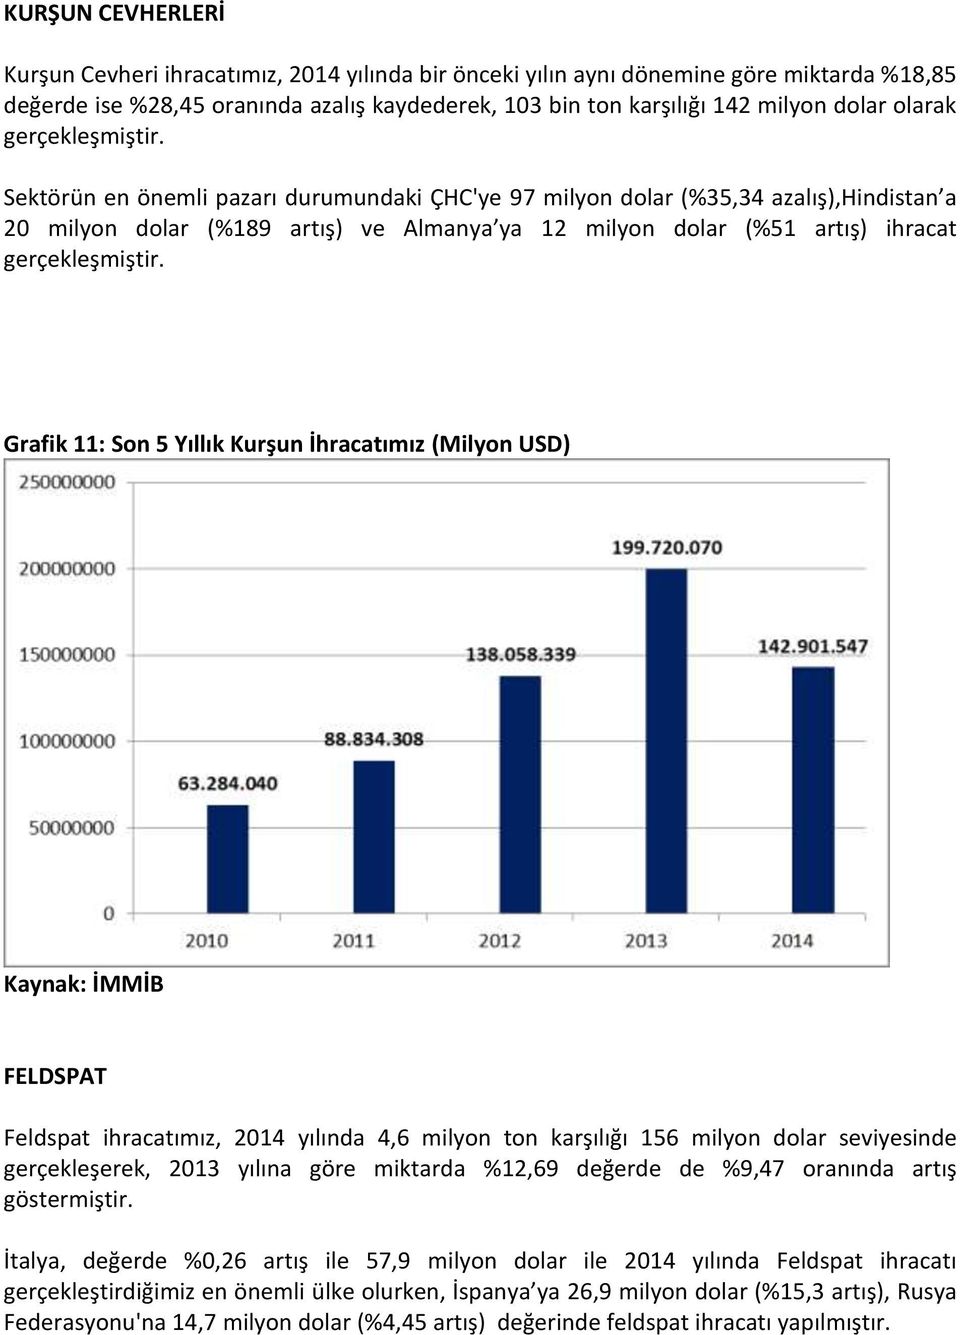 Kurşun İhracatımız (Milyon USD) FELDSPAT Feldspat ihracatımız, 2014 yılında 4,6 milyon ton karşılığı 156 milyon dolar seviyesinde gerçekleşerek, 2013 yılına göre miktarda %12,69 değerde de %9,47